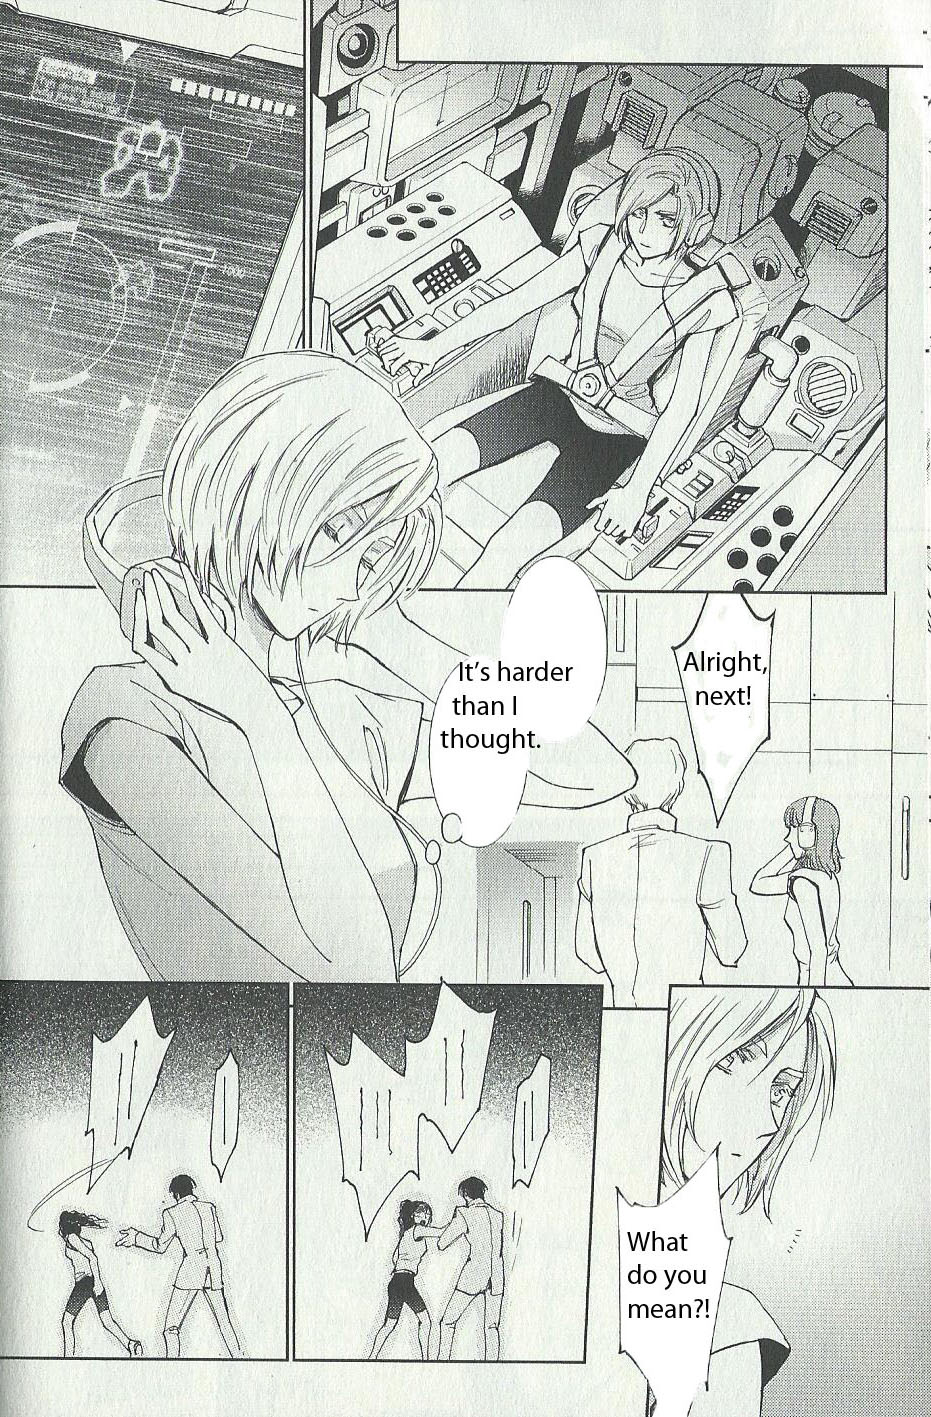 Kidou Senshi Gundam Gyakushuu no Char: Beyond the Time Vol. 1 Ch. 2 Augusta